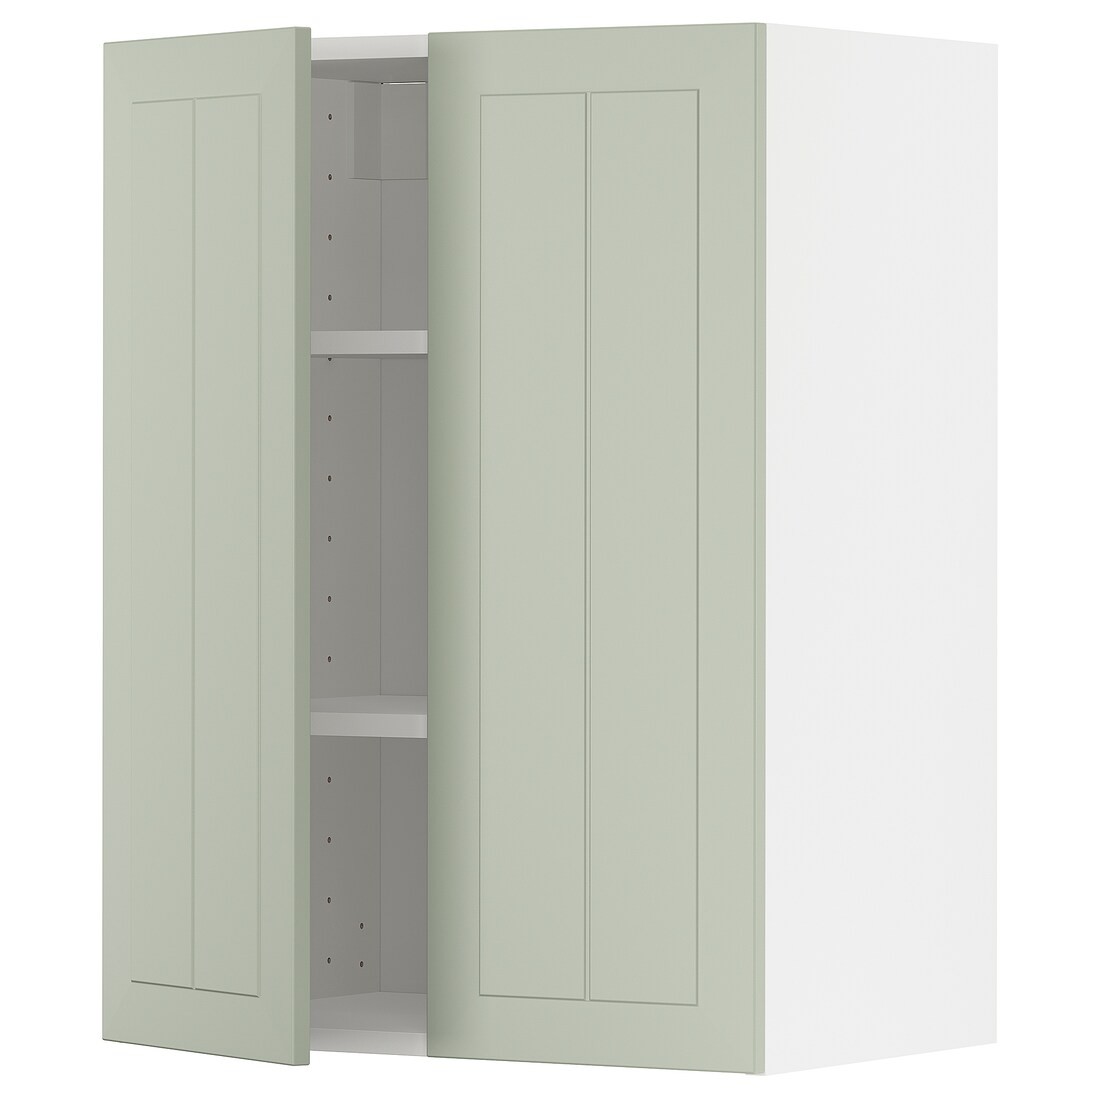 IKEA METOD МЕТОД Навісна шафа з полицями / 2 дверцят, білий / Stensund світло-зелений, 60x80 см 99486781 994.867.81